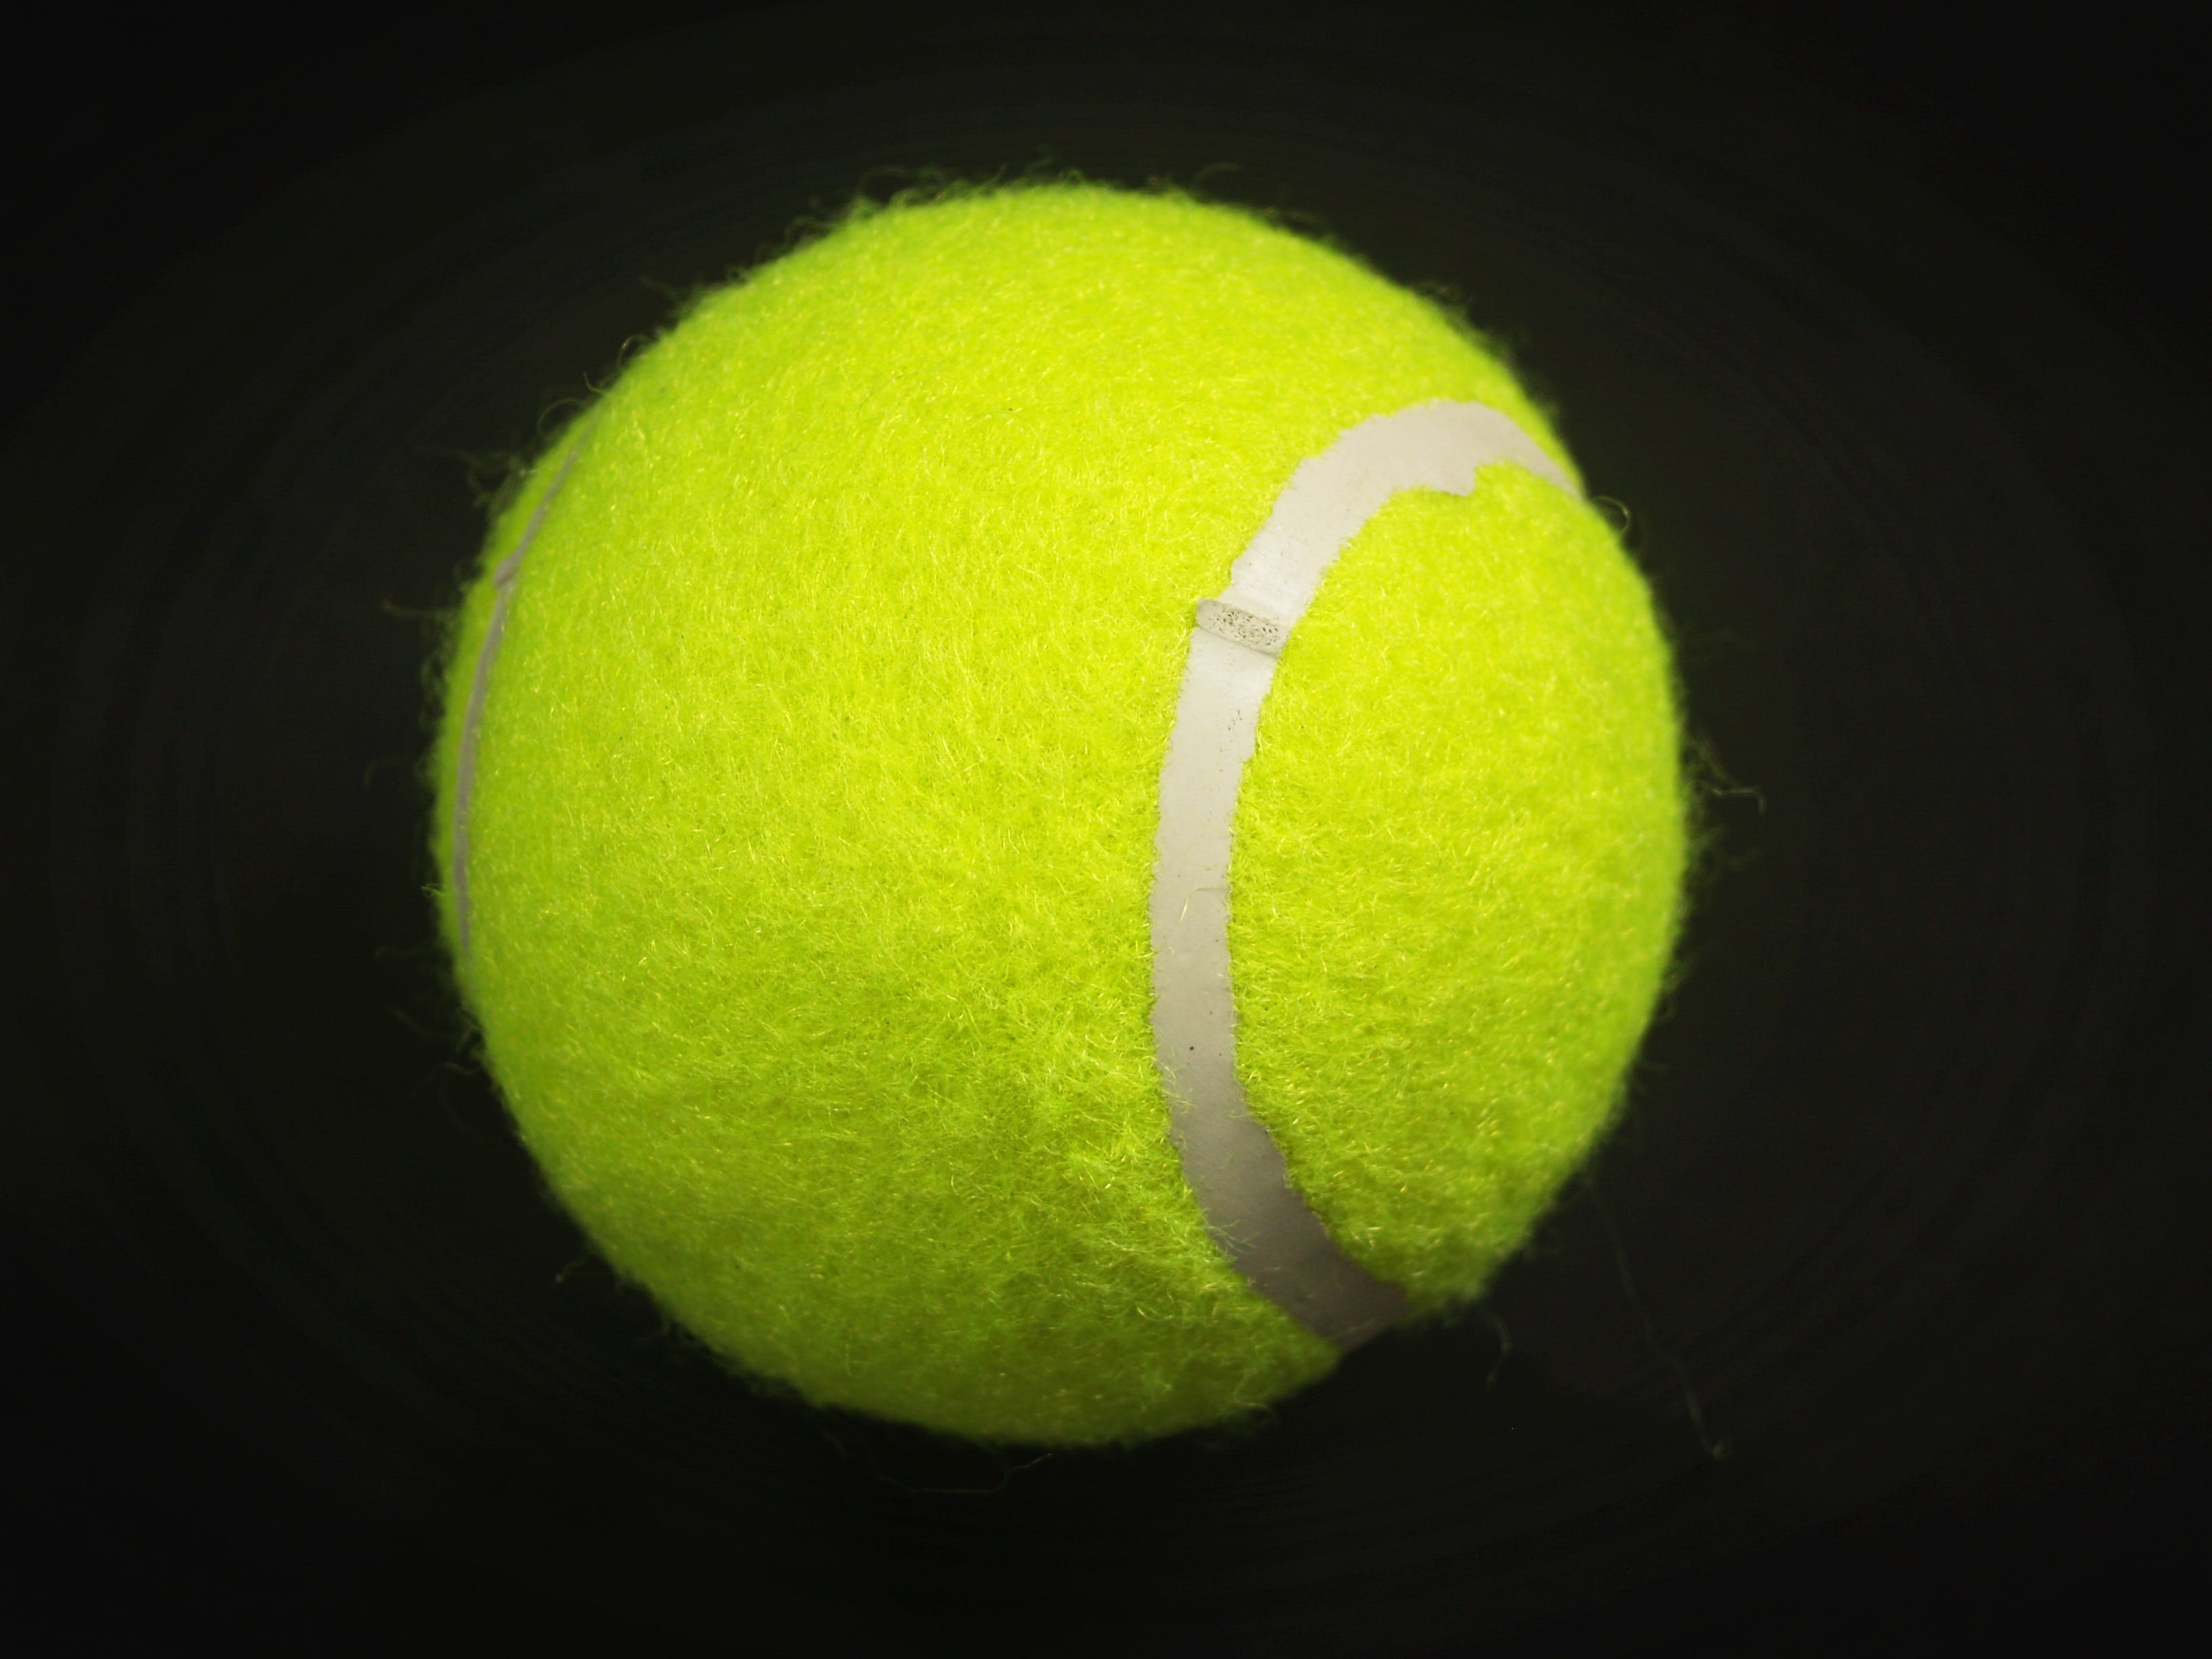 テニスボールの壁紙,テニスボール,緑,テニス,スポーツ用品,スポーツ